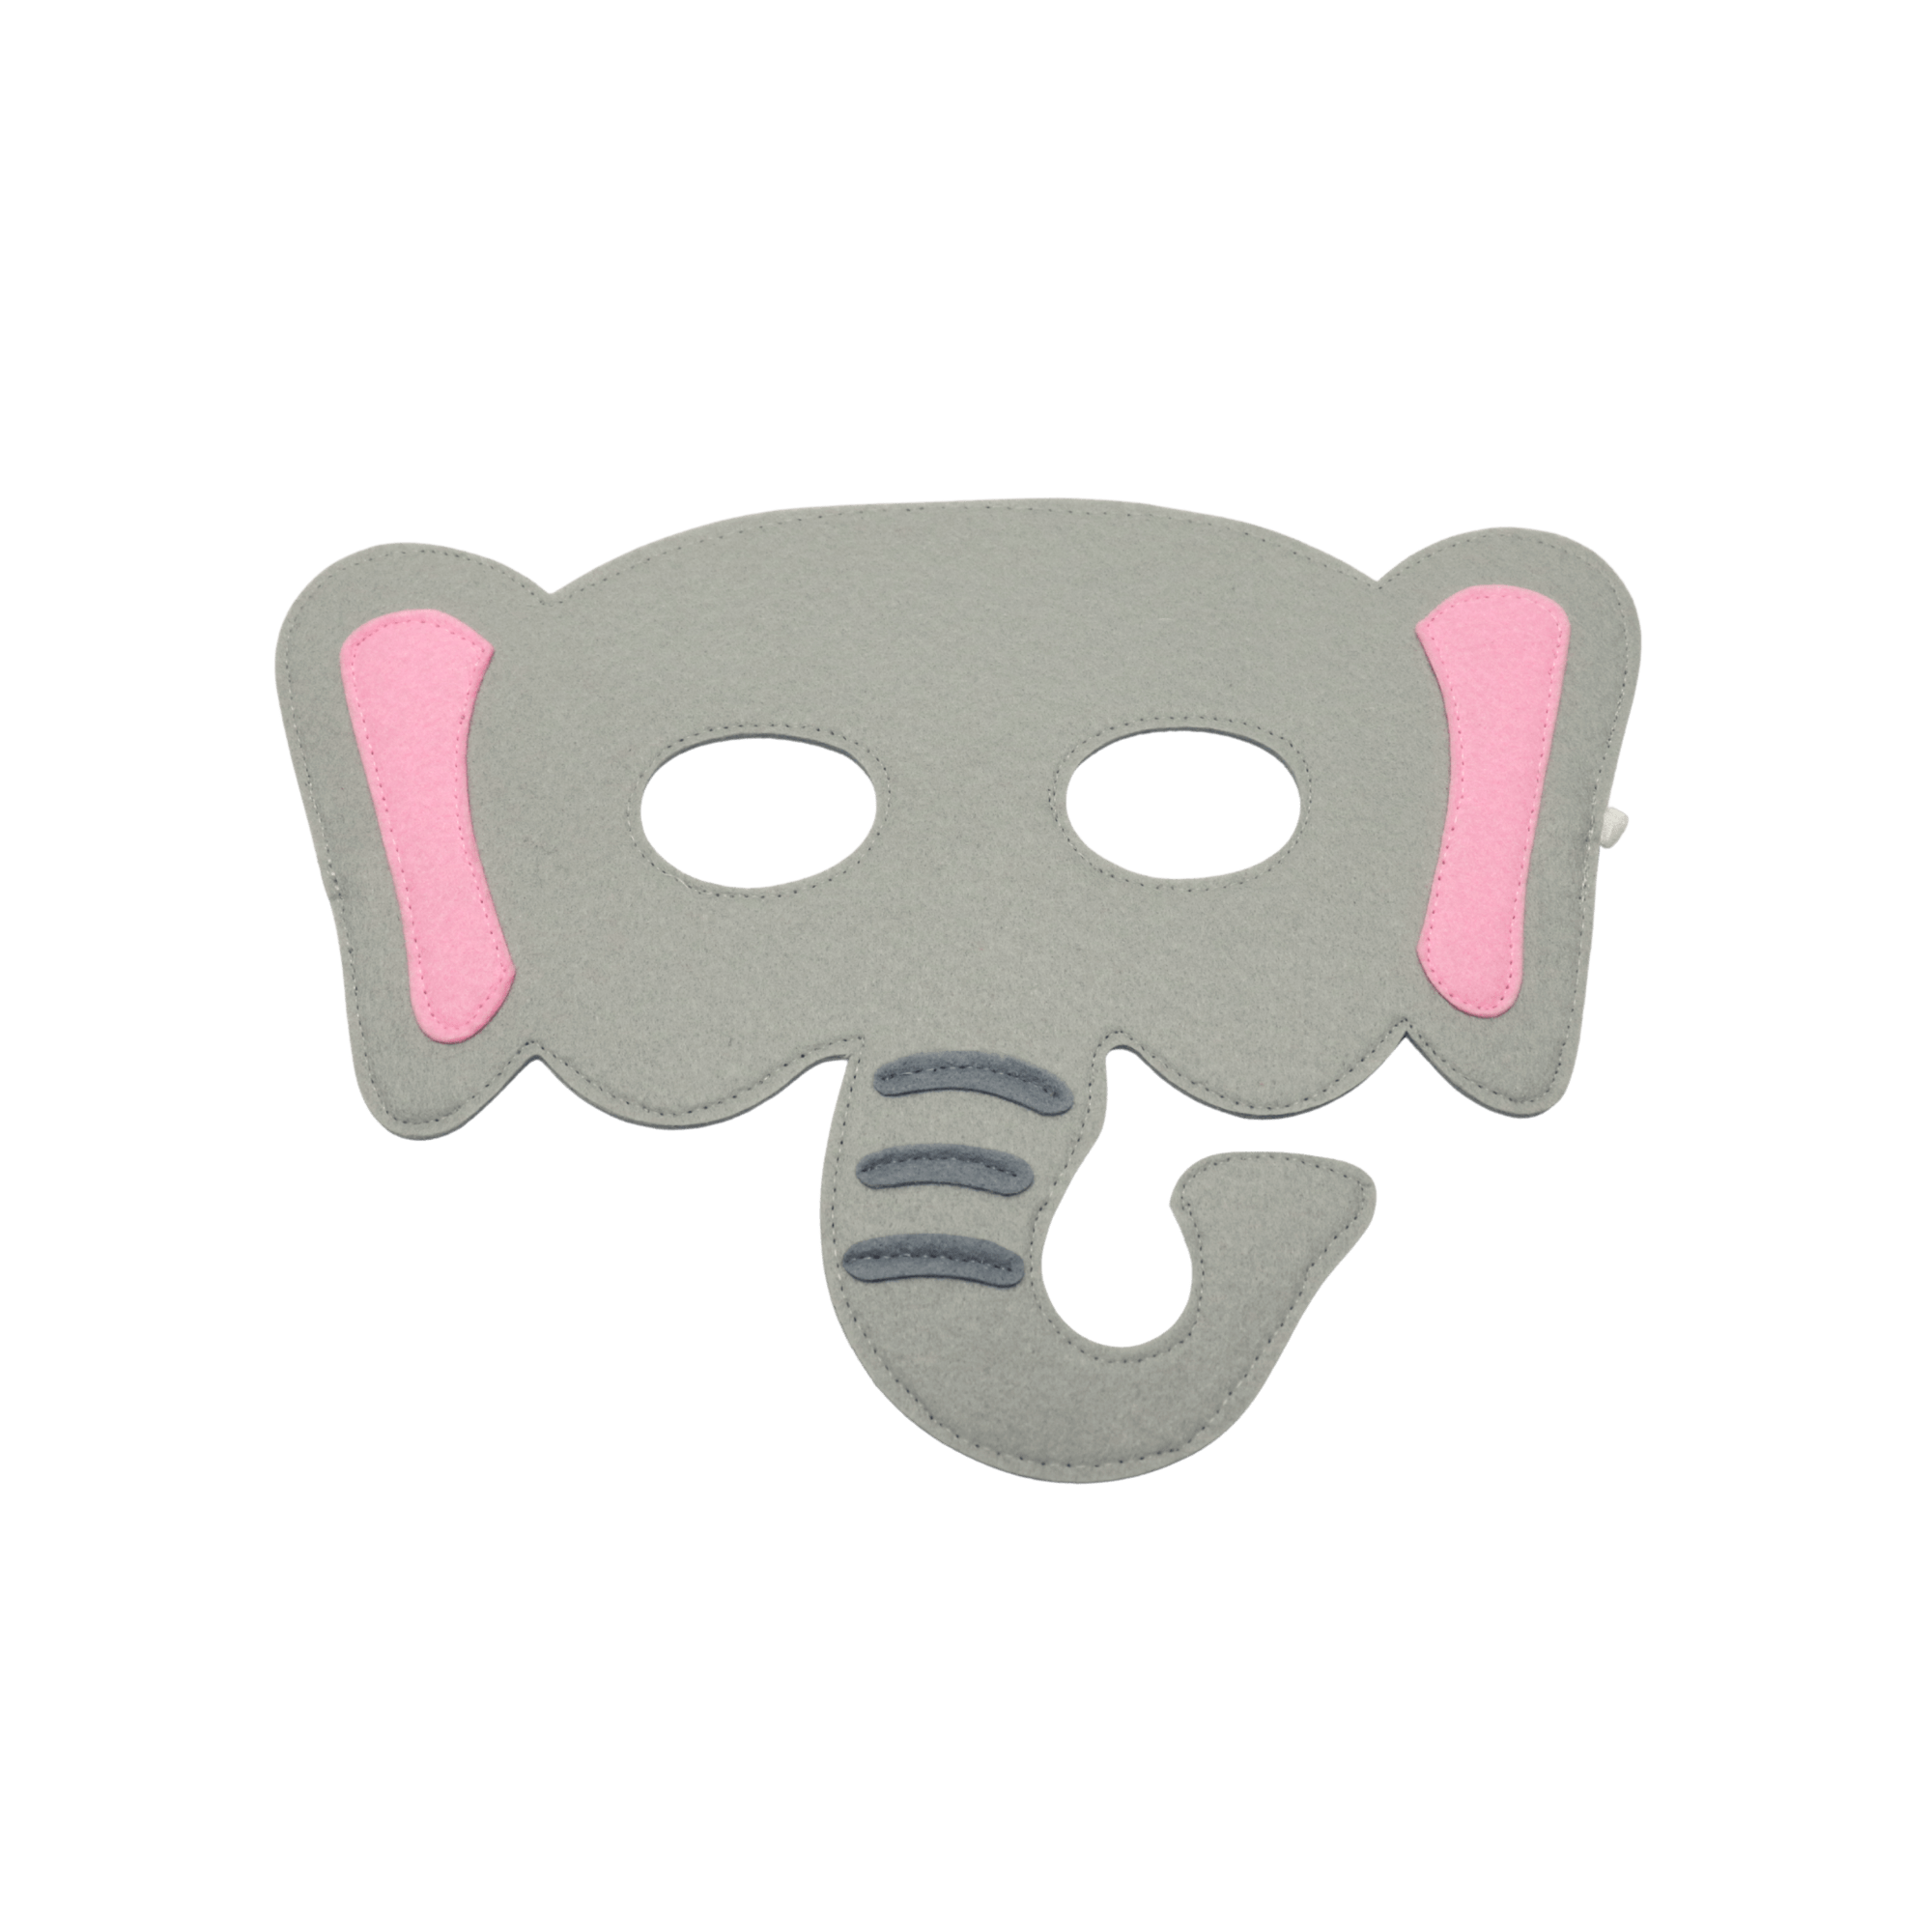 Elefant Filzmaske